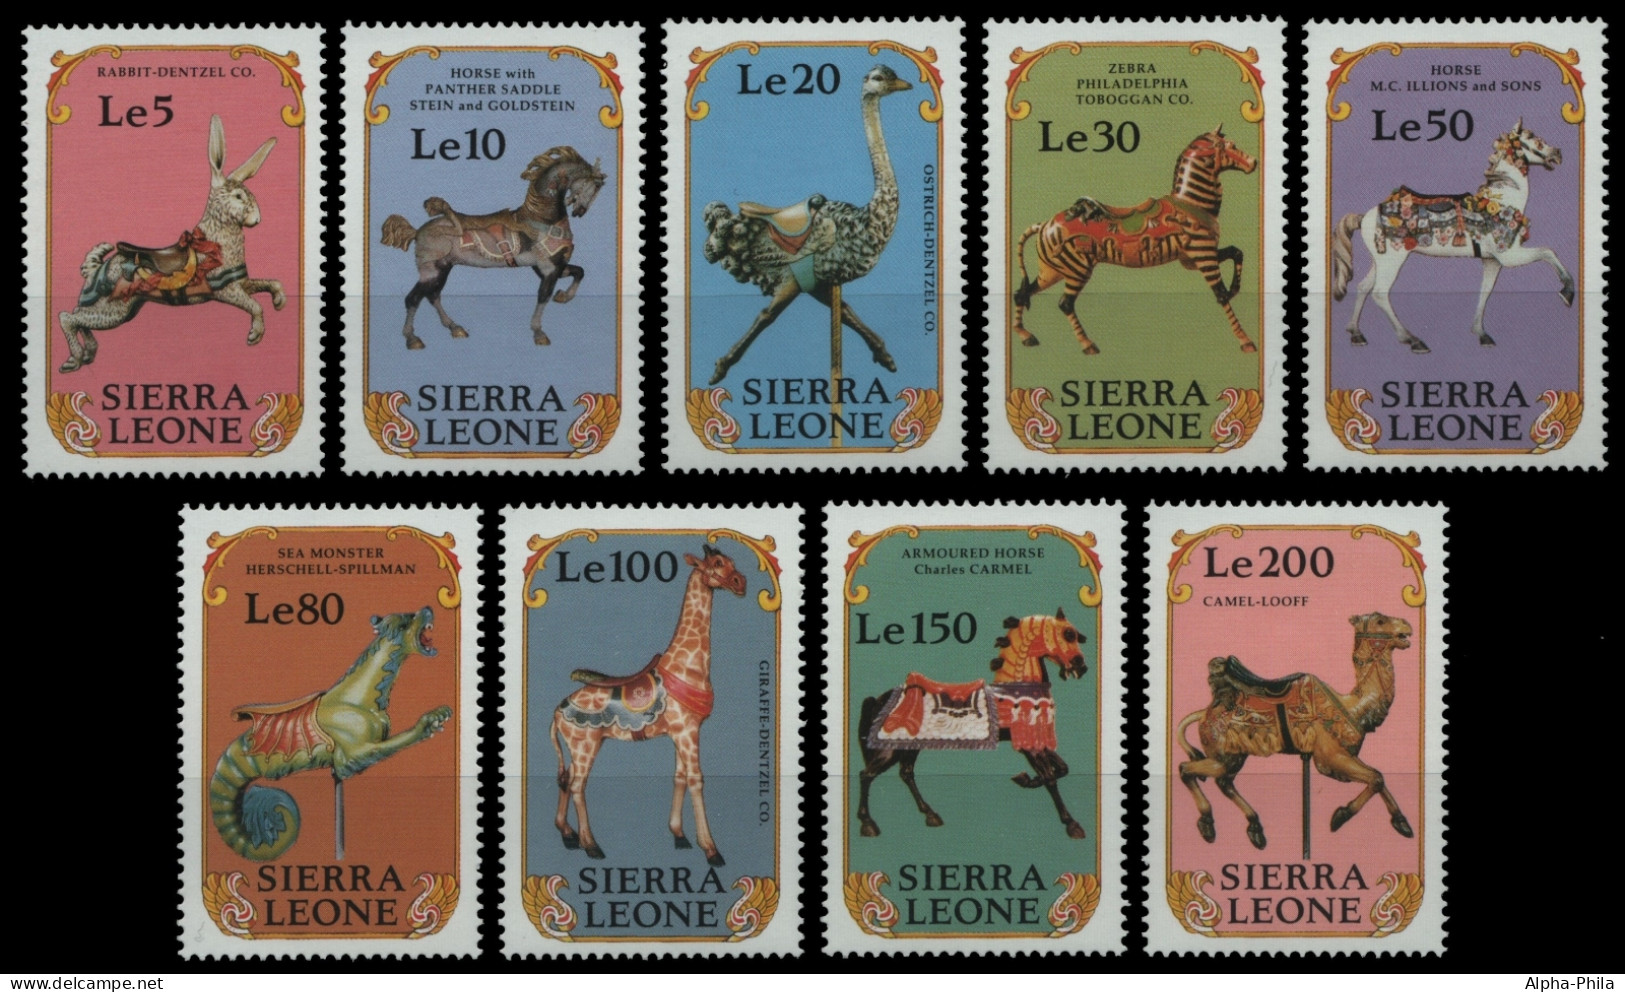 Sierra Leone 1990 - Mi-Nr. 1498-1506 ** - MNH - Karussell / Carousel - Sierra Leona (1961-...)